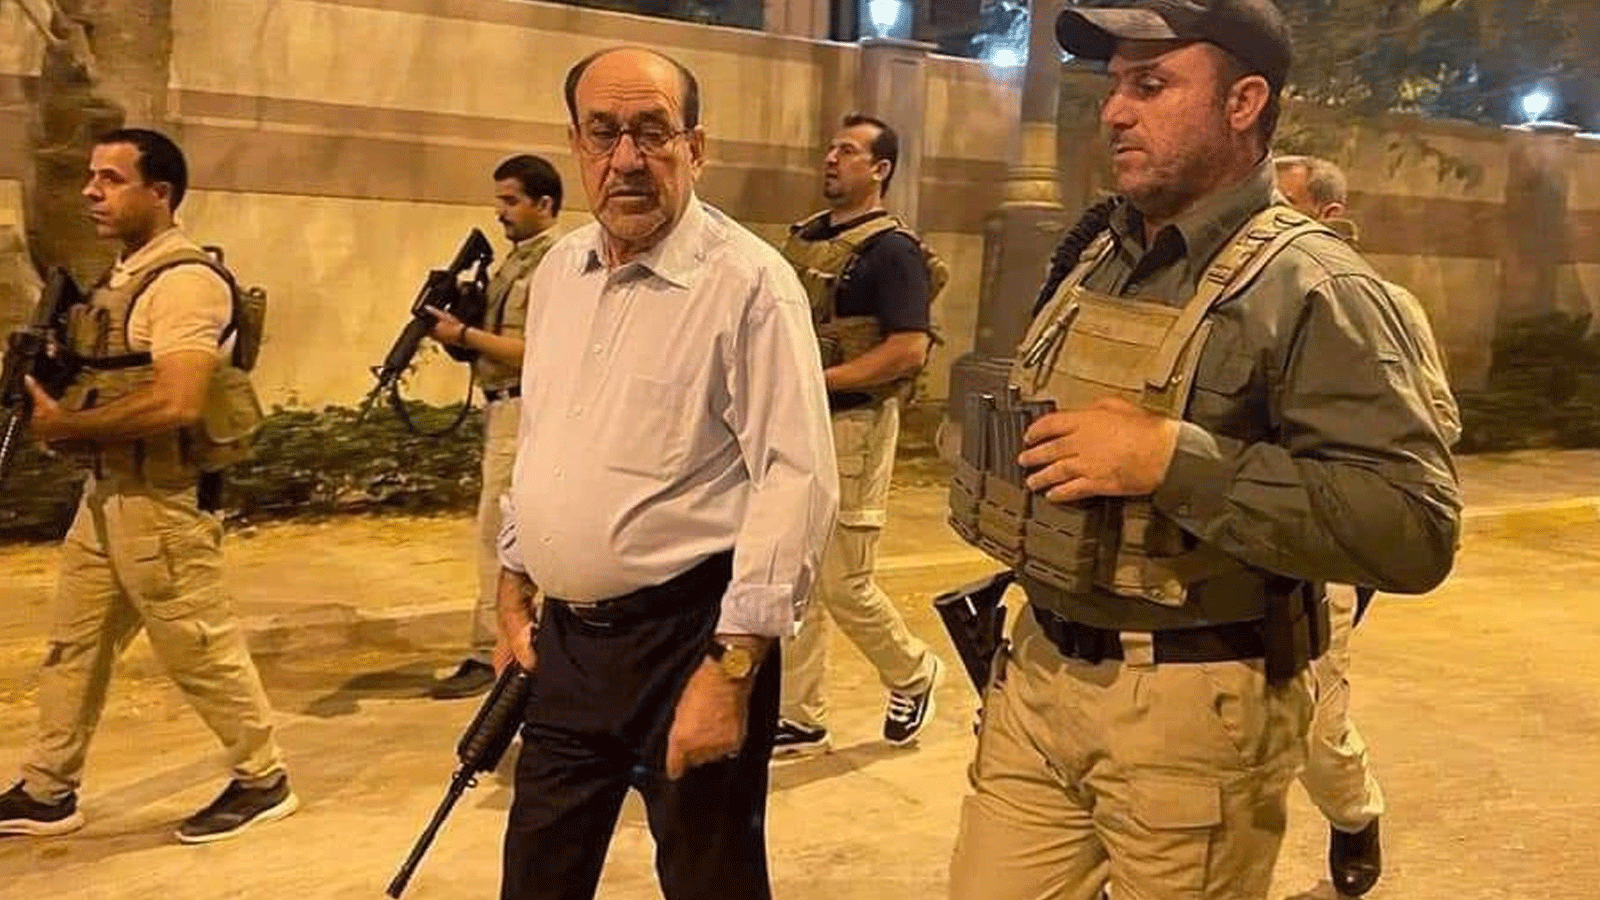 المالكي حاملاً سلاحه الشخصي ومحاطاً بثلة من الحراس الشخصيين المسلحين في المنطقة الخضراء وسط بغداد، اثر اقتحامها من انصار التيار الصدري. 27 تموز\يوليو 2022 (تويتر)